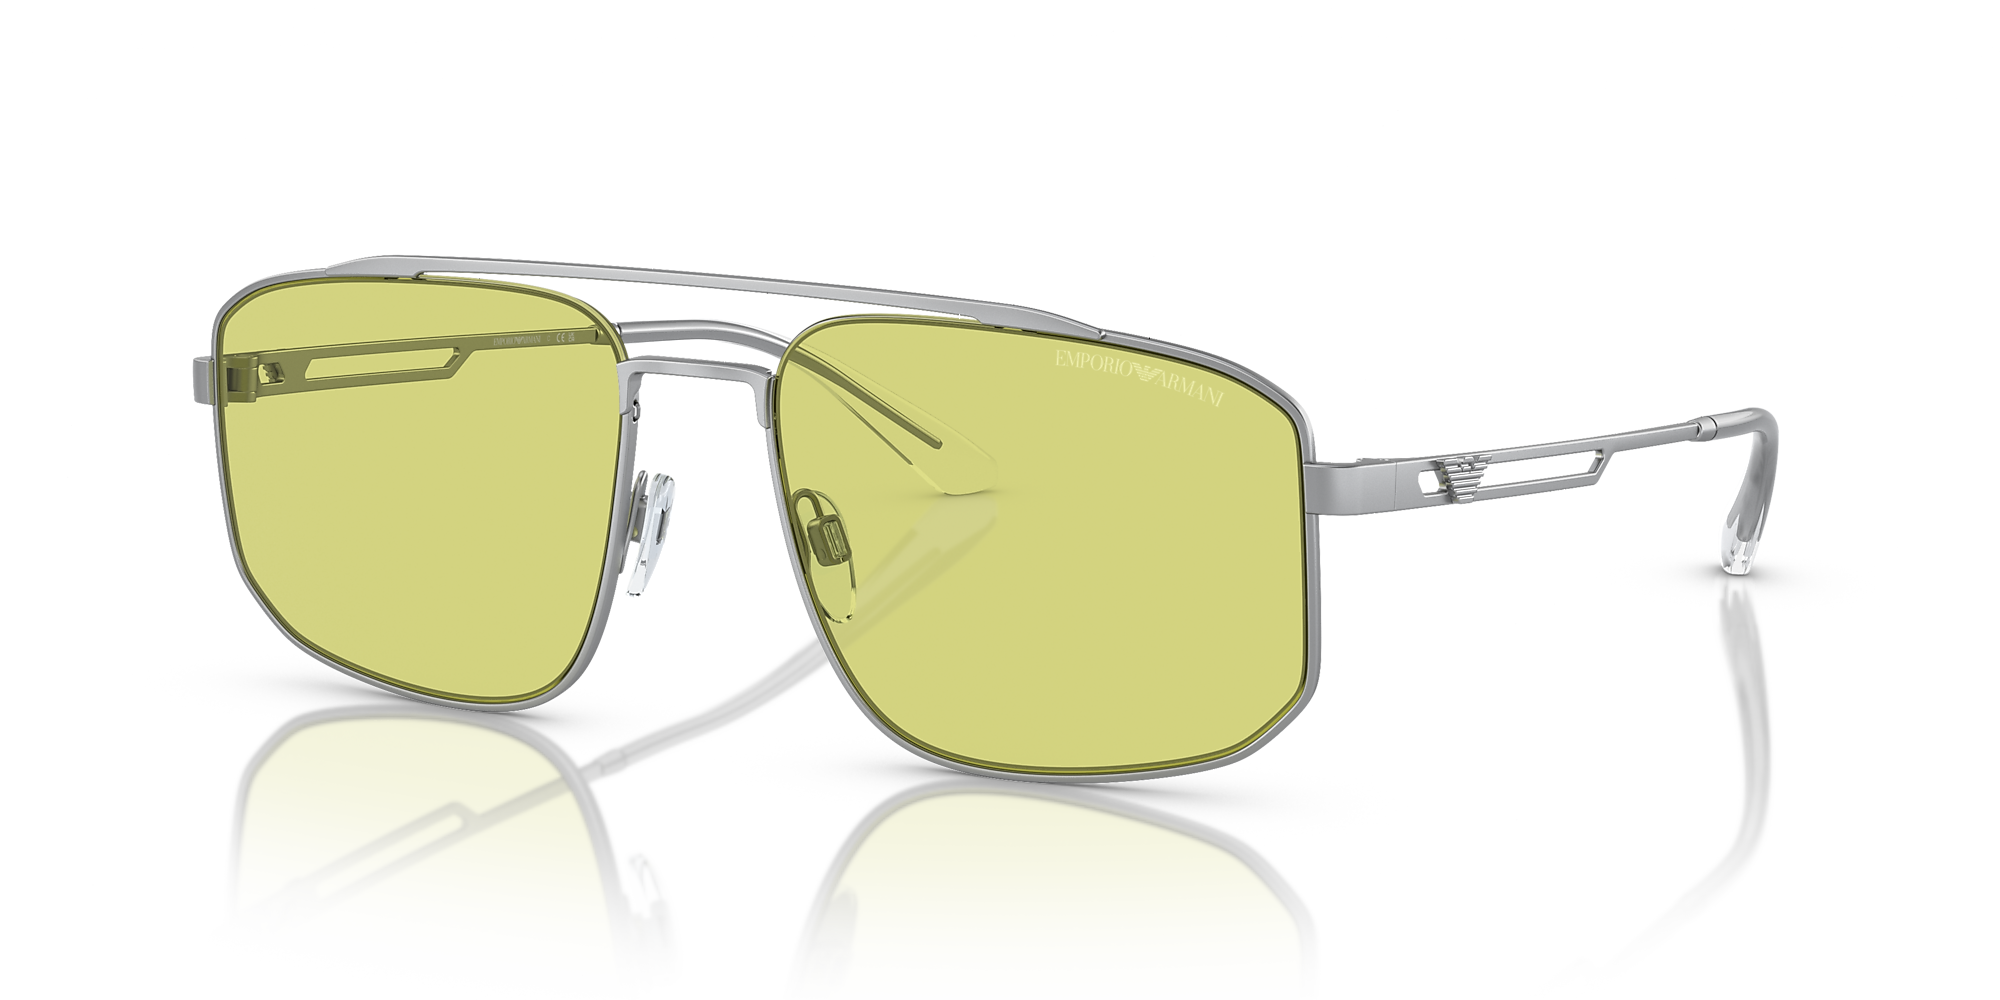 Emporio Armani EA2139 57 Green & Matte Silver Sunglasses | Sunglass Hut ...